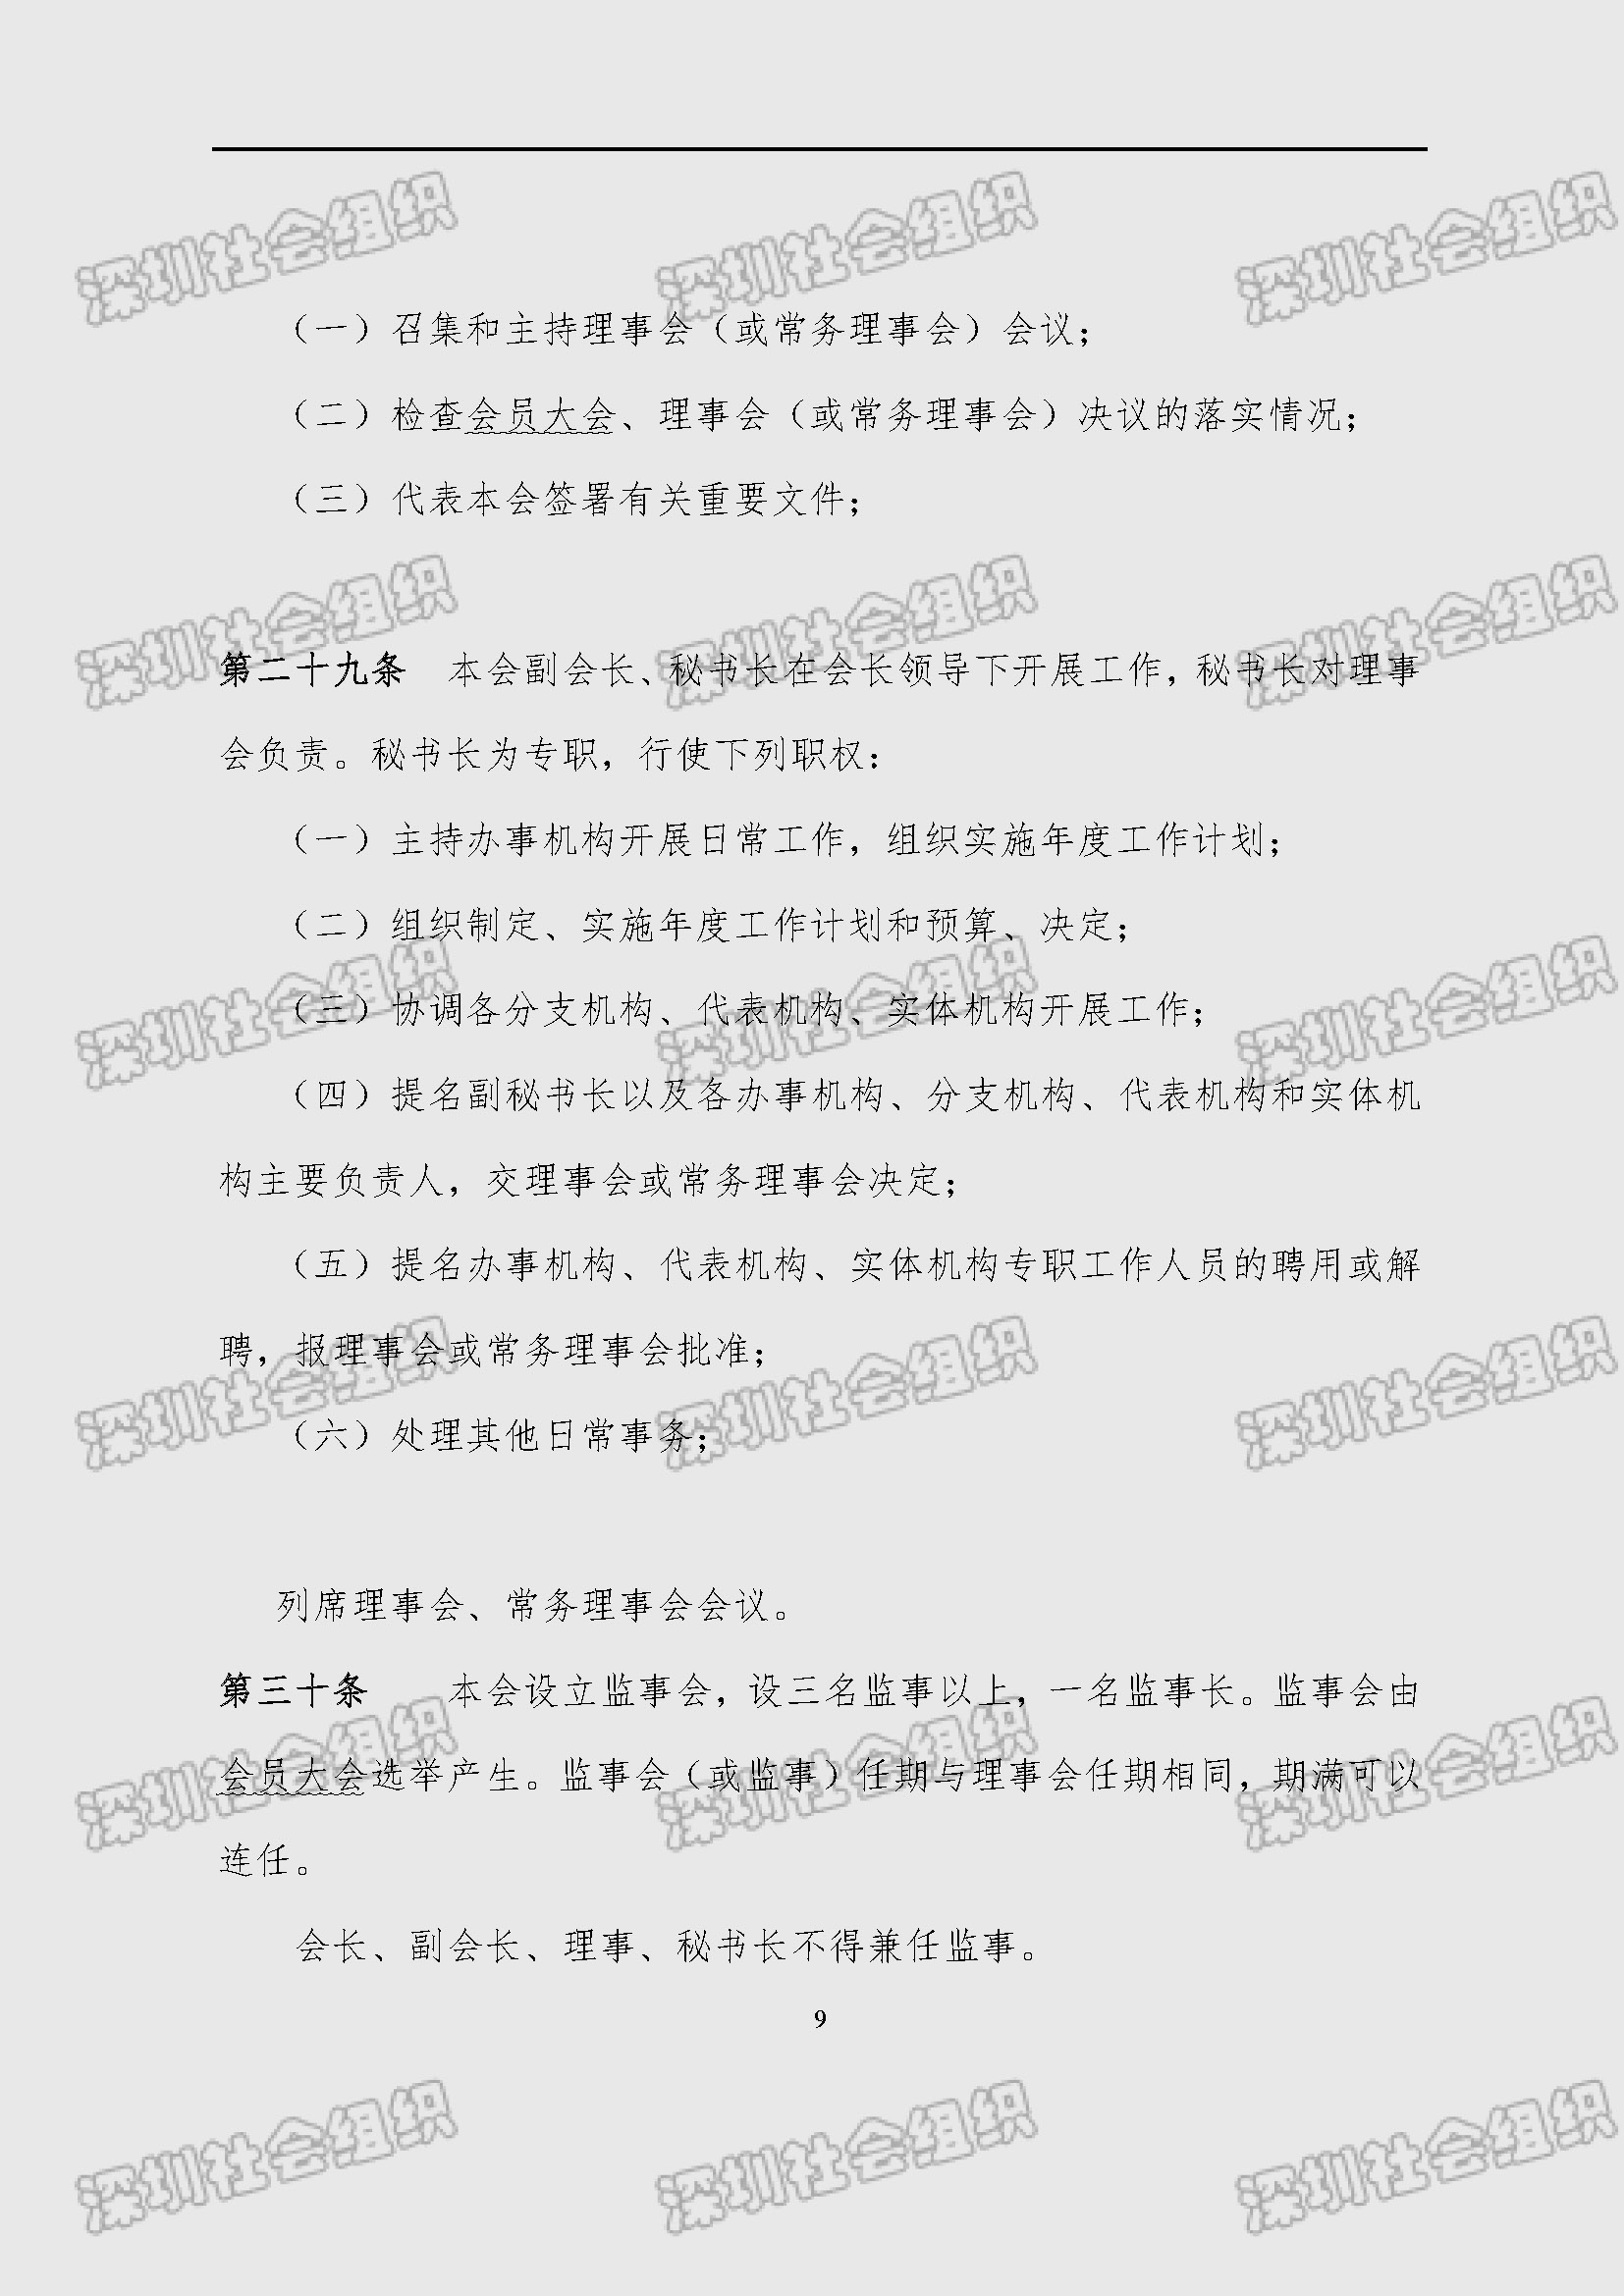 深圳市新材料行业协会章程_页面_09.jpg